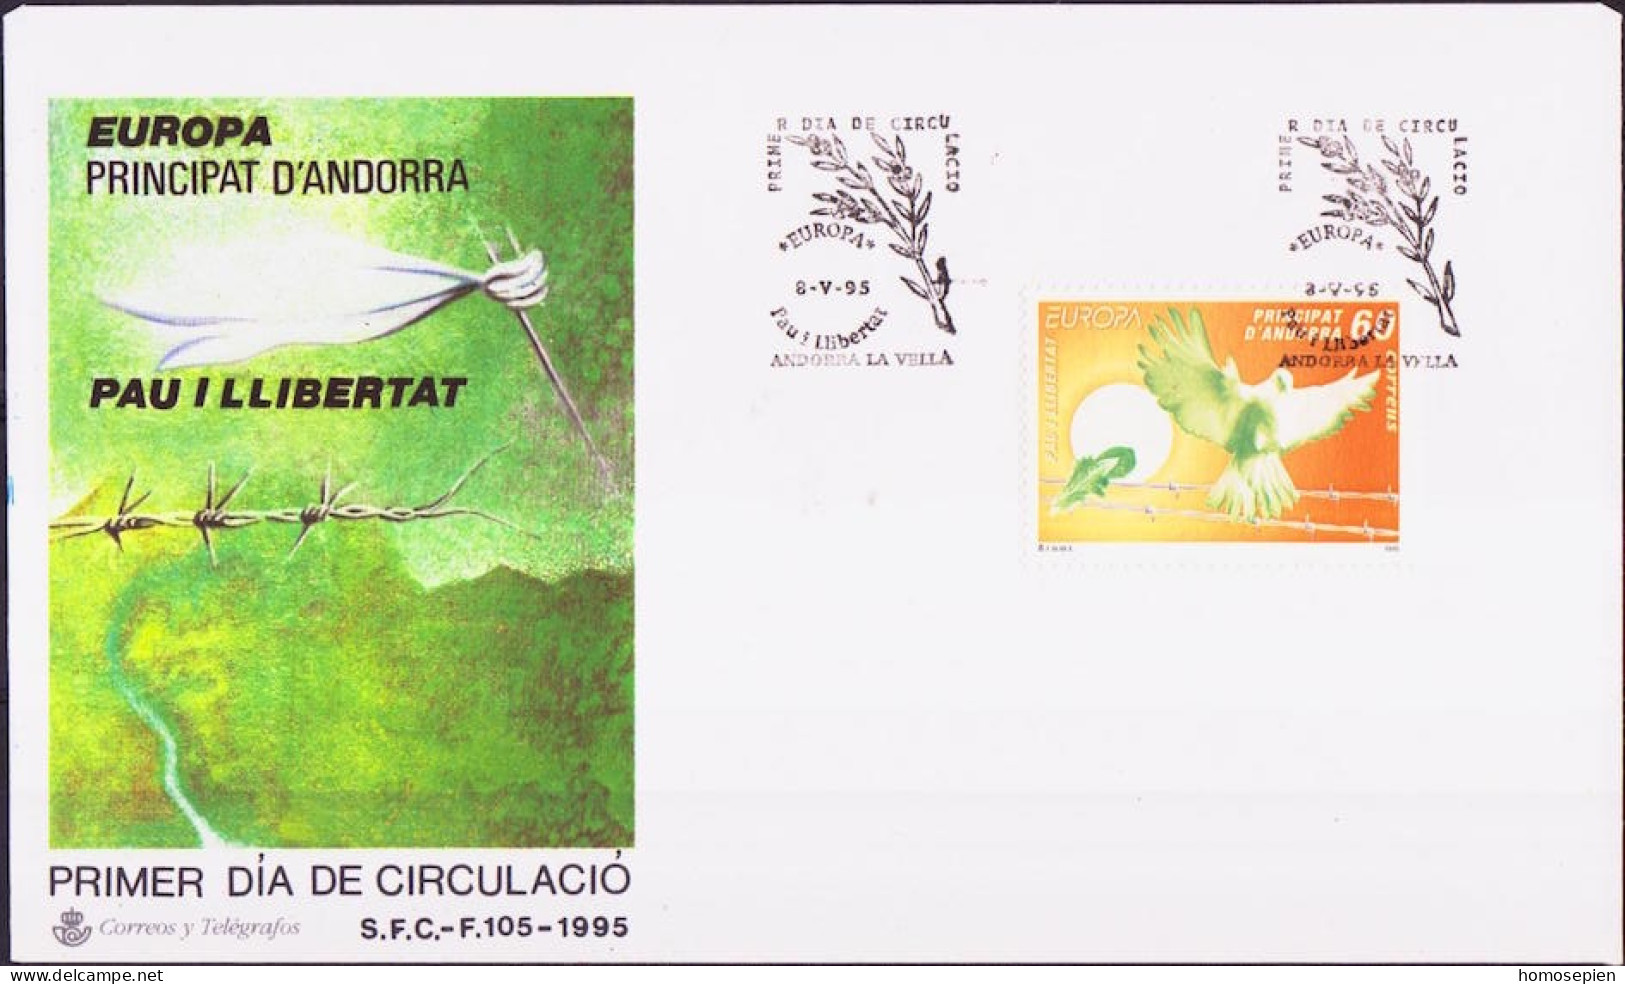 Europa CEPT 1995 Andorre Espagnol - Andorra FDC Y&T N°233 - Michel N°243 - 60p EUROPA - 1995